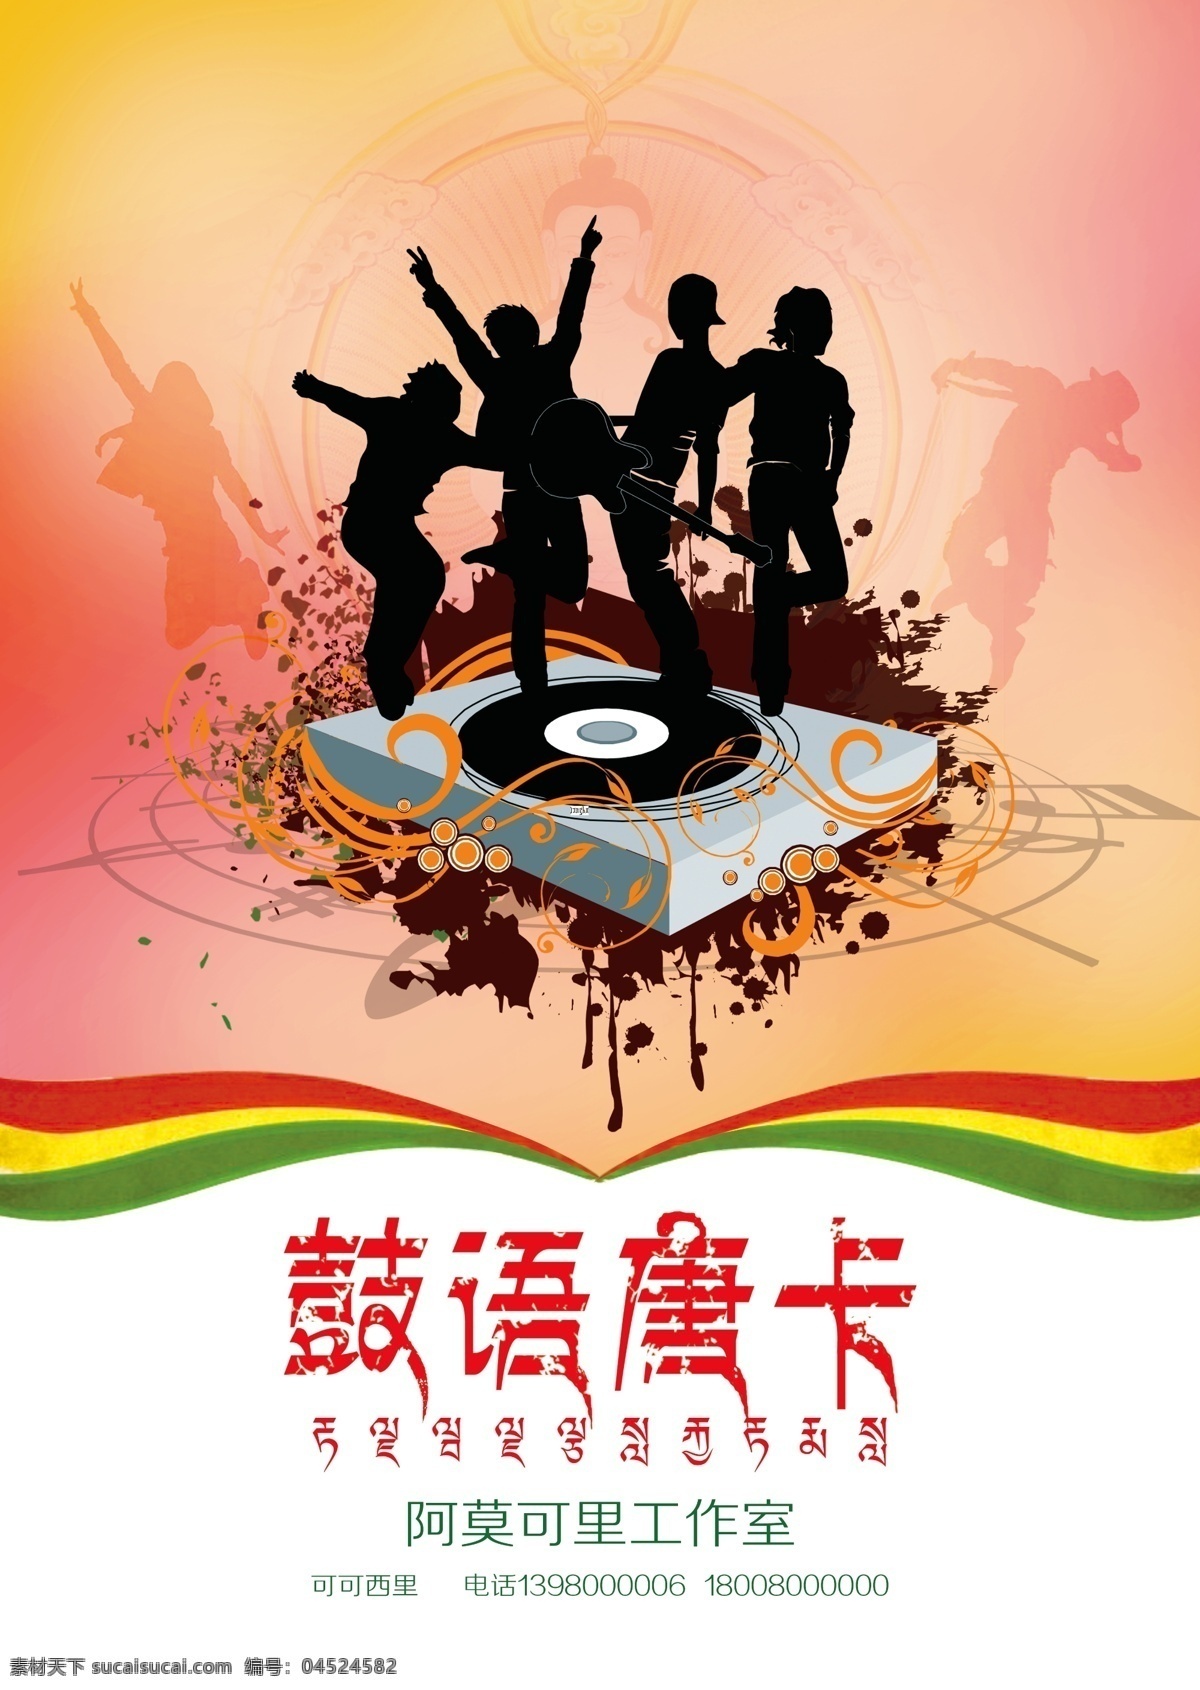 鼓 语 唐卡 音乐 海报 鼓语唐卡 音乐海报 动感 mp3 舞蹈 藏族风情 青春背景 时尚元素 大气海报 广告设计模板 源文件